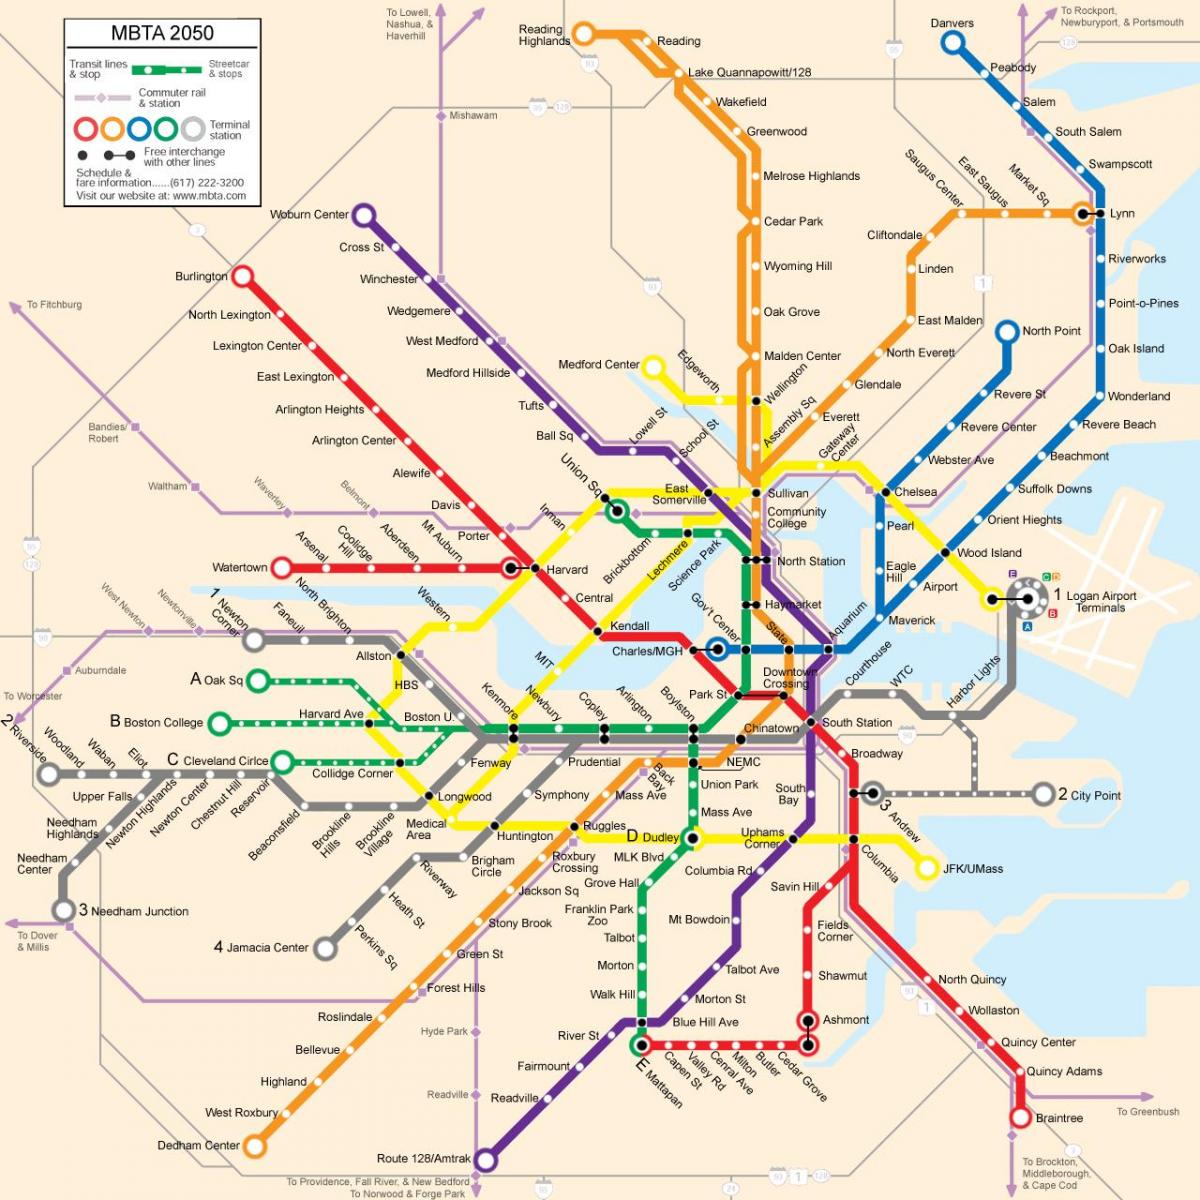 Boston transportit publik hartë